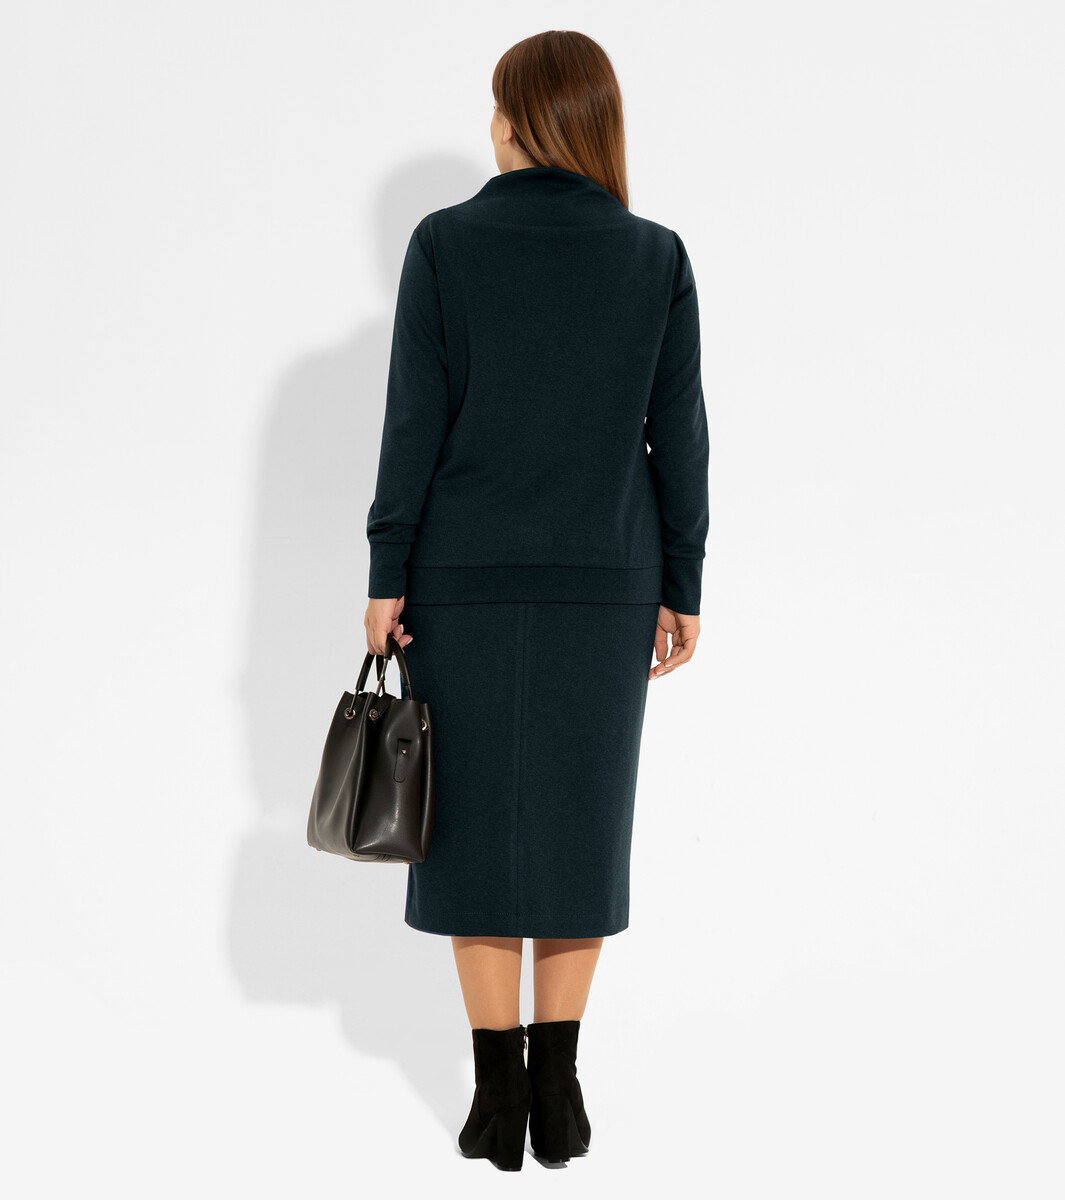 Комплект женский (джемпер, юбка) PANDA, размер 56, цвет темно-зеленый 01121928 - фото 2